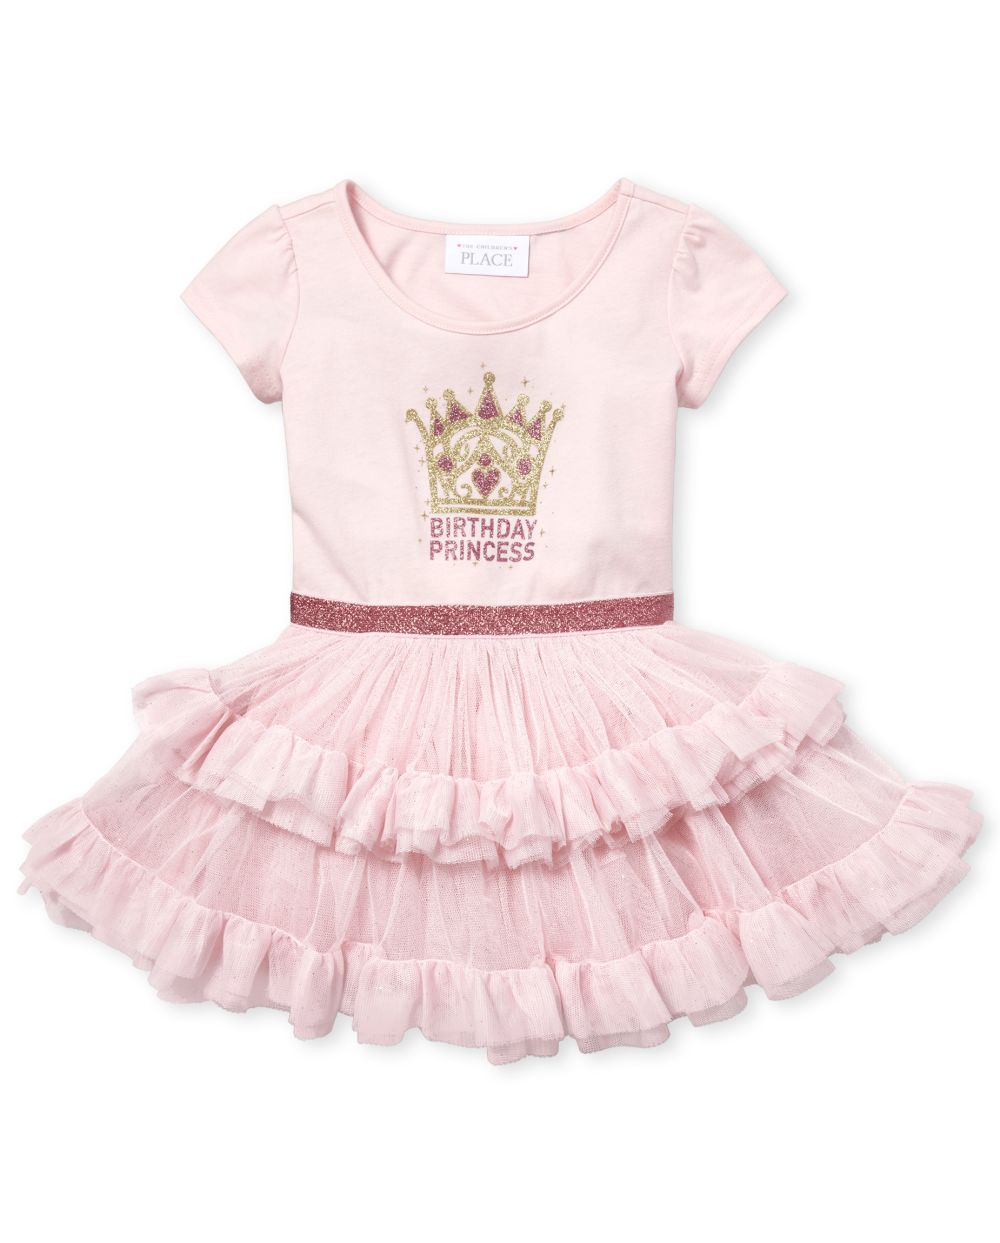 princess tutu dress for babies